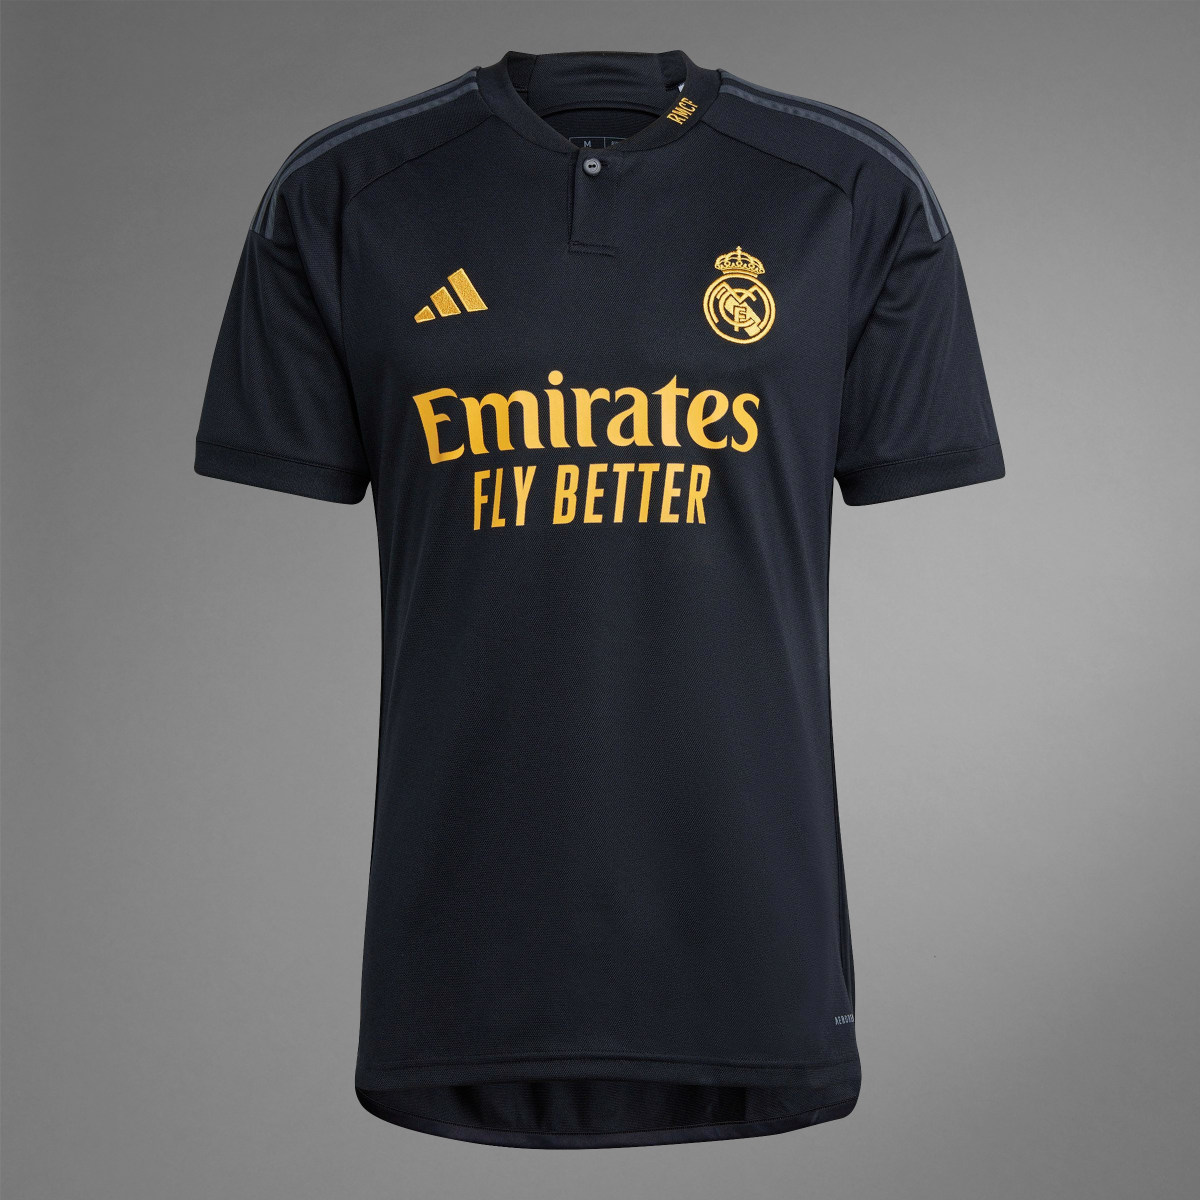 Adidas Camisola do Terceiro Equipamento 23/24 do Real Madrid. 10